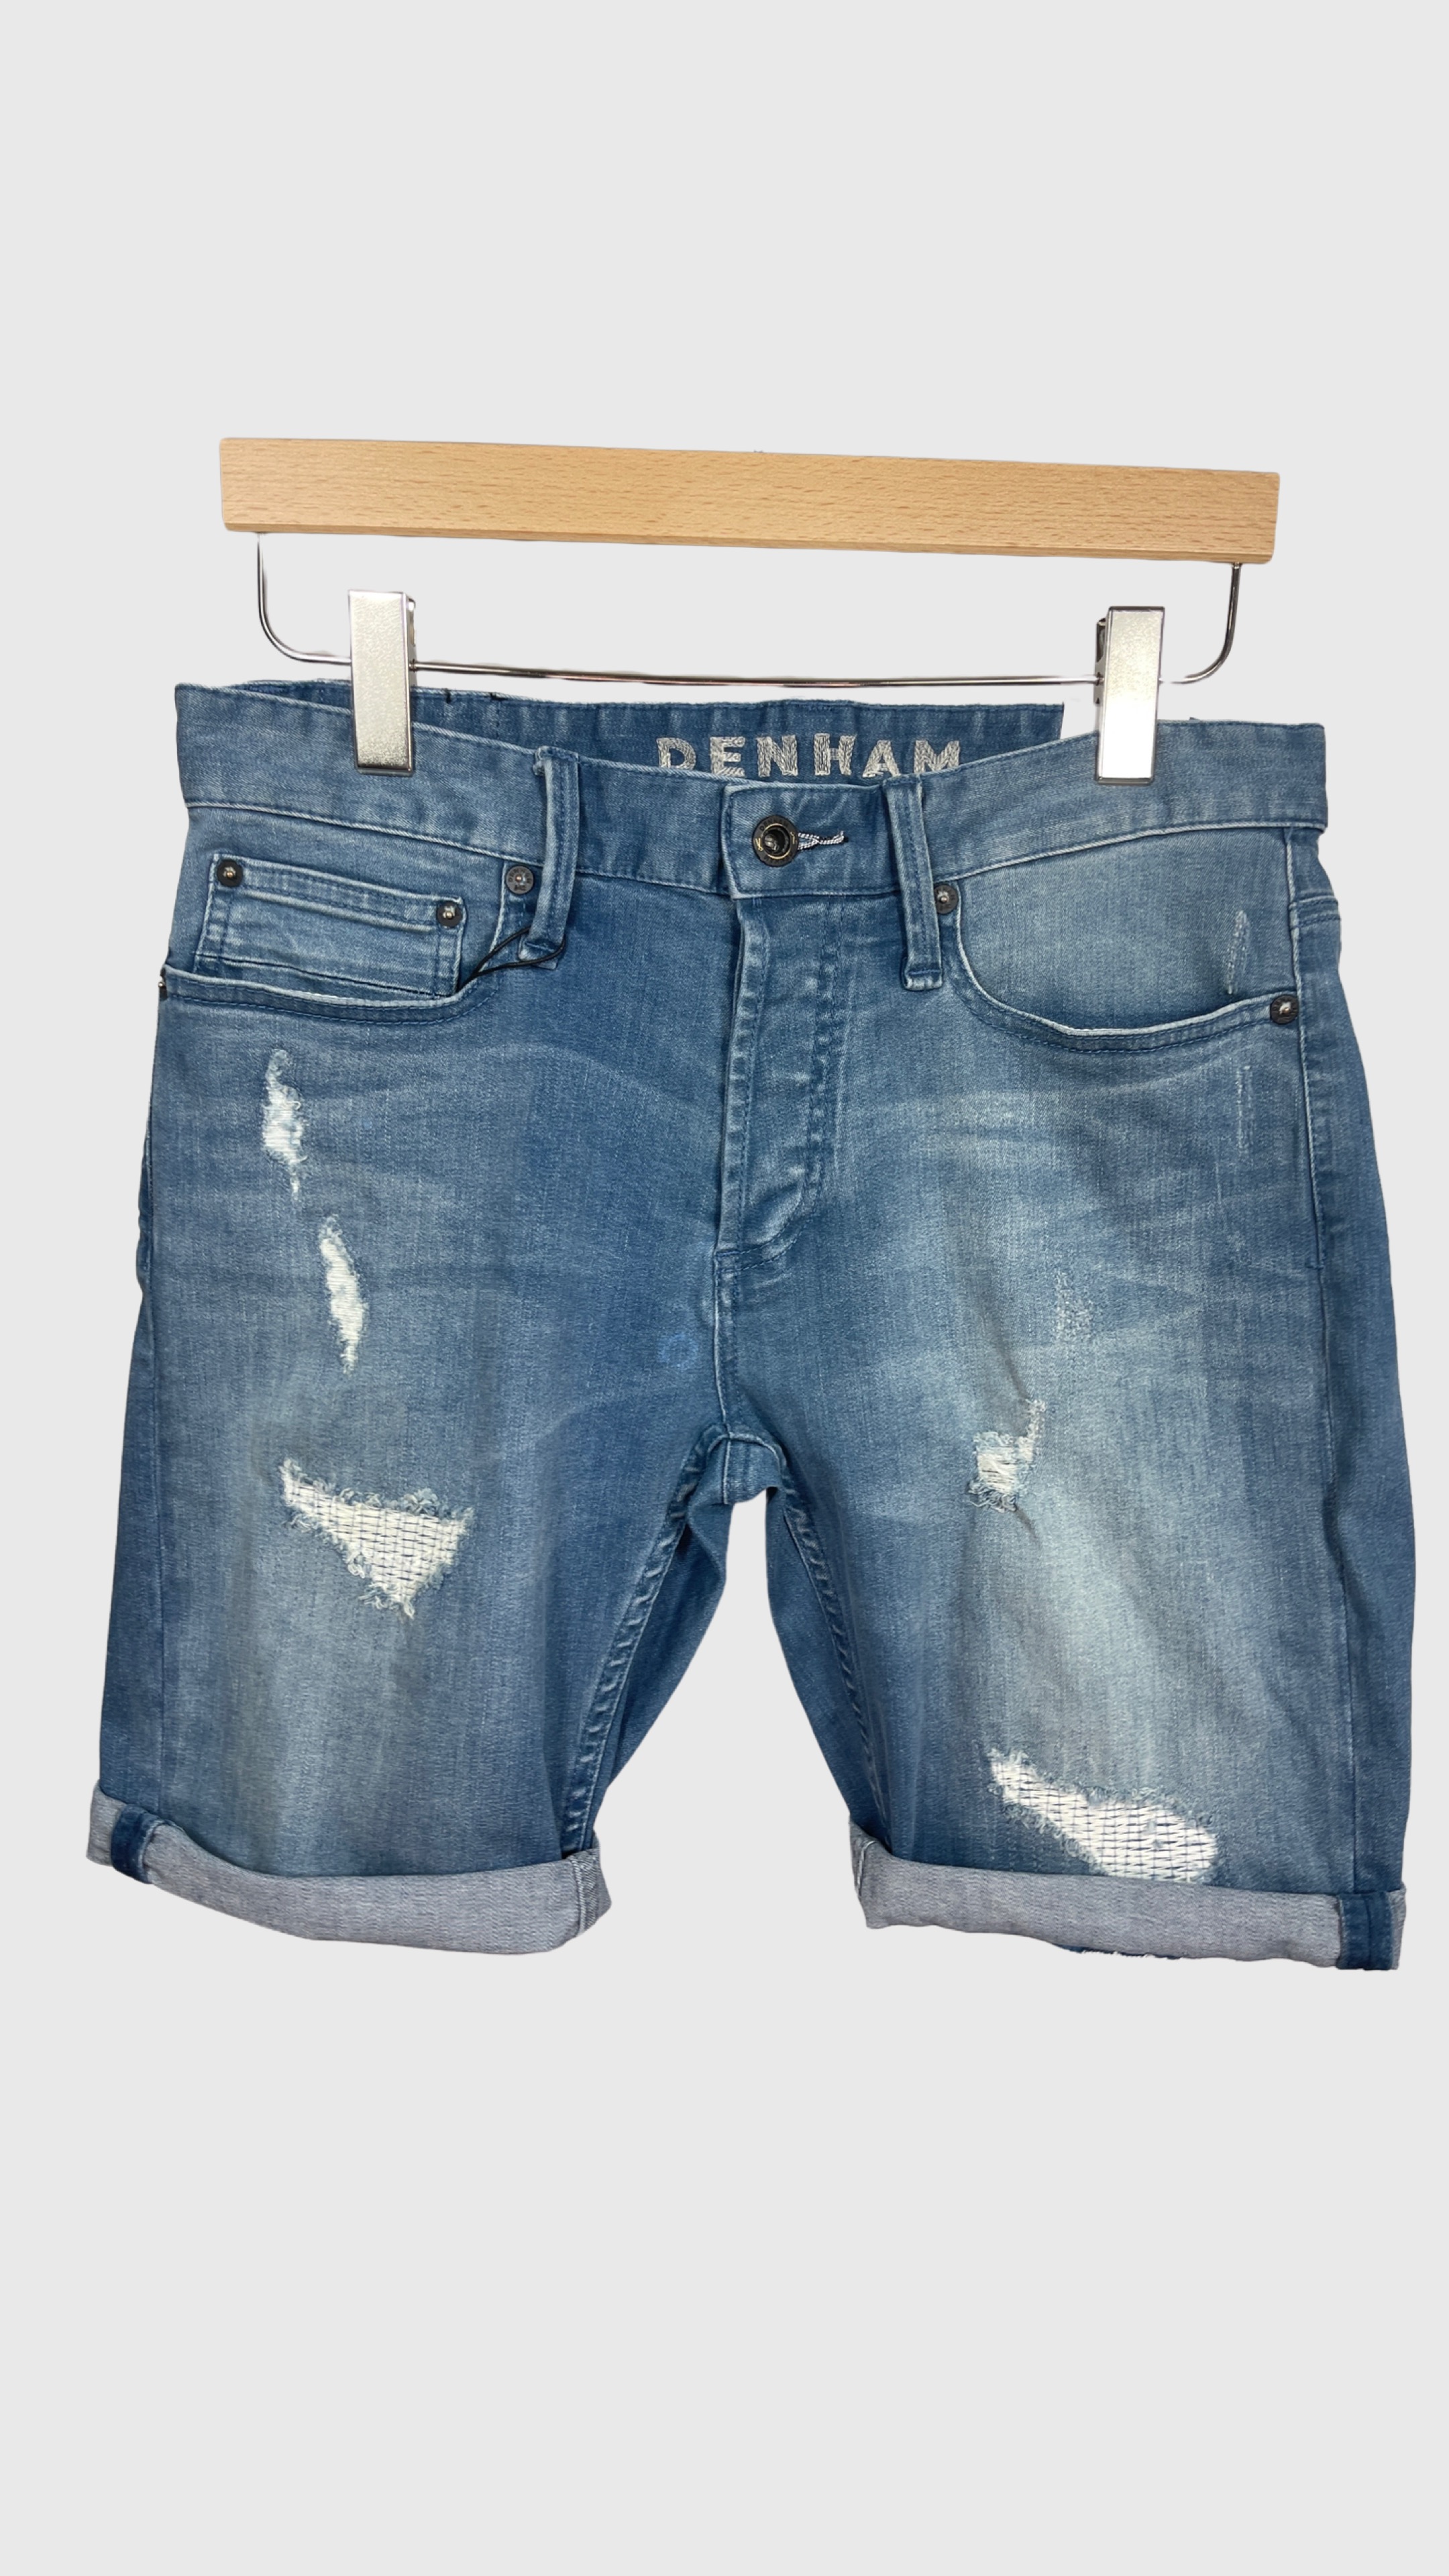 DENHAM 01-21-05-16-007  RAZOR SHORT BLR&R  Herren Jeansshorts Stretch Destroyed Used Look Mittelblau Blue